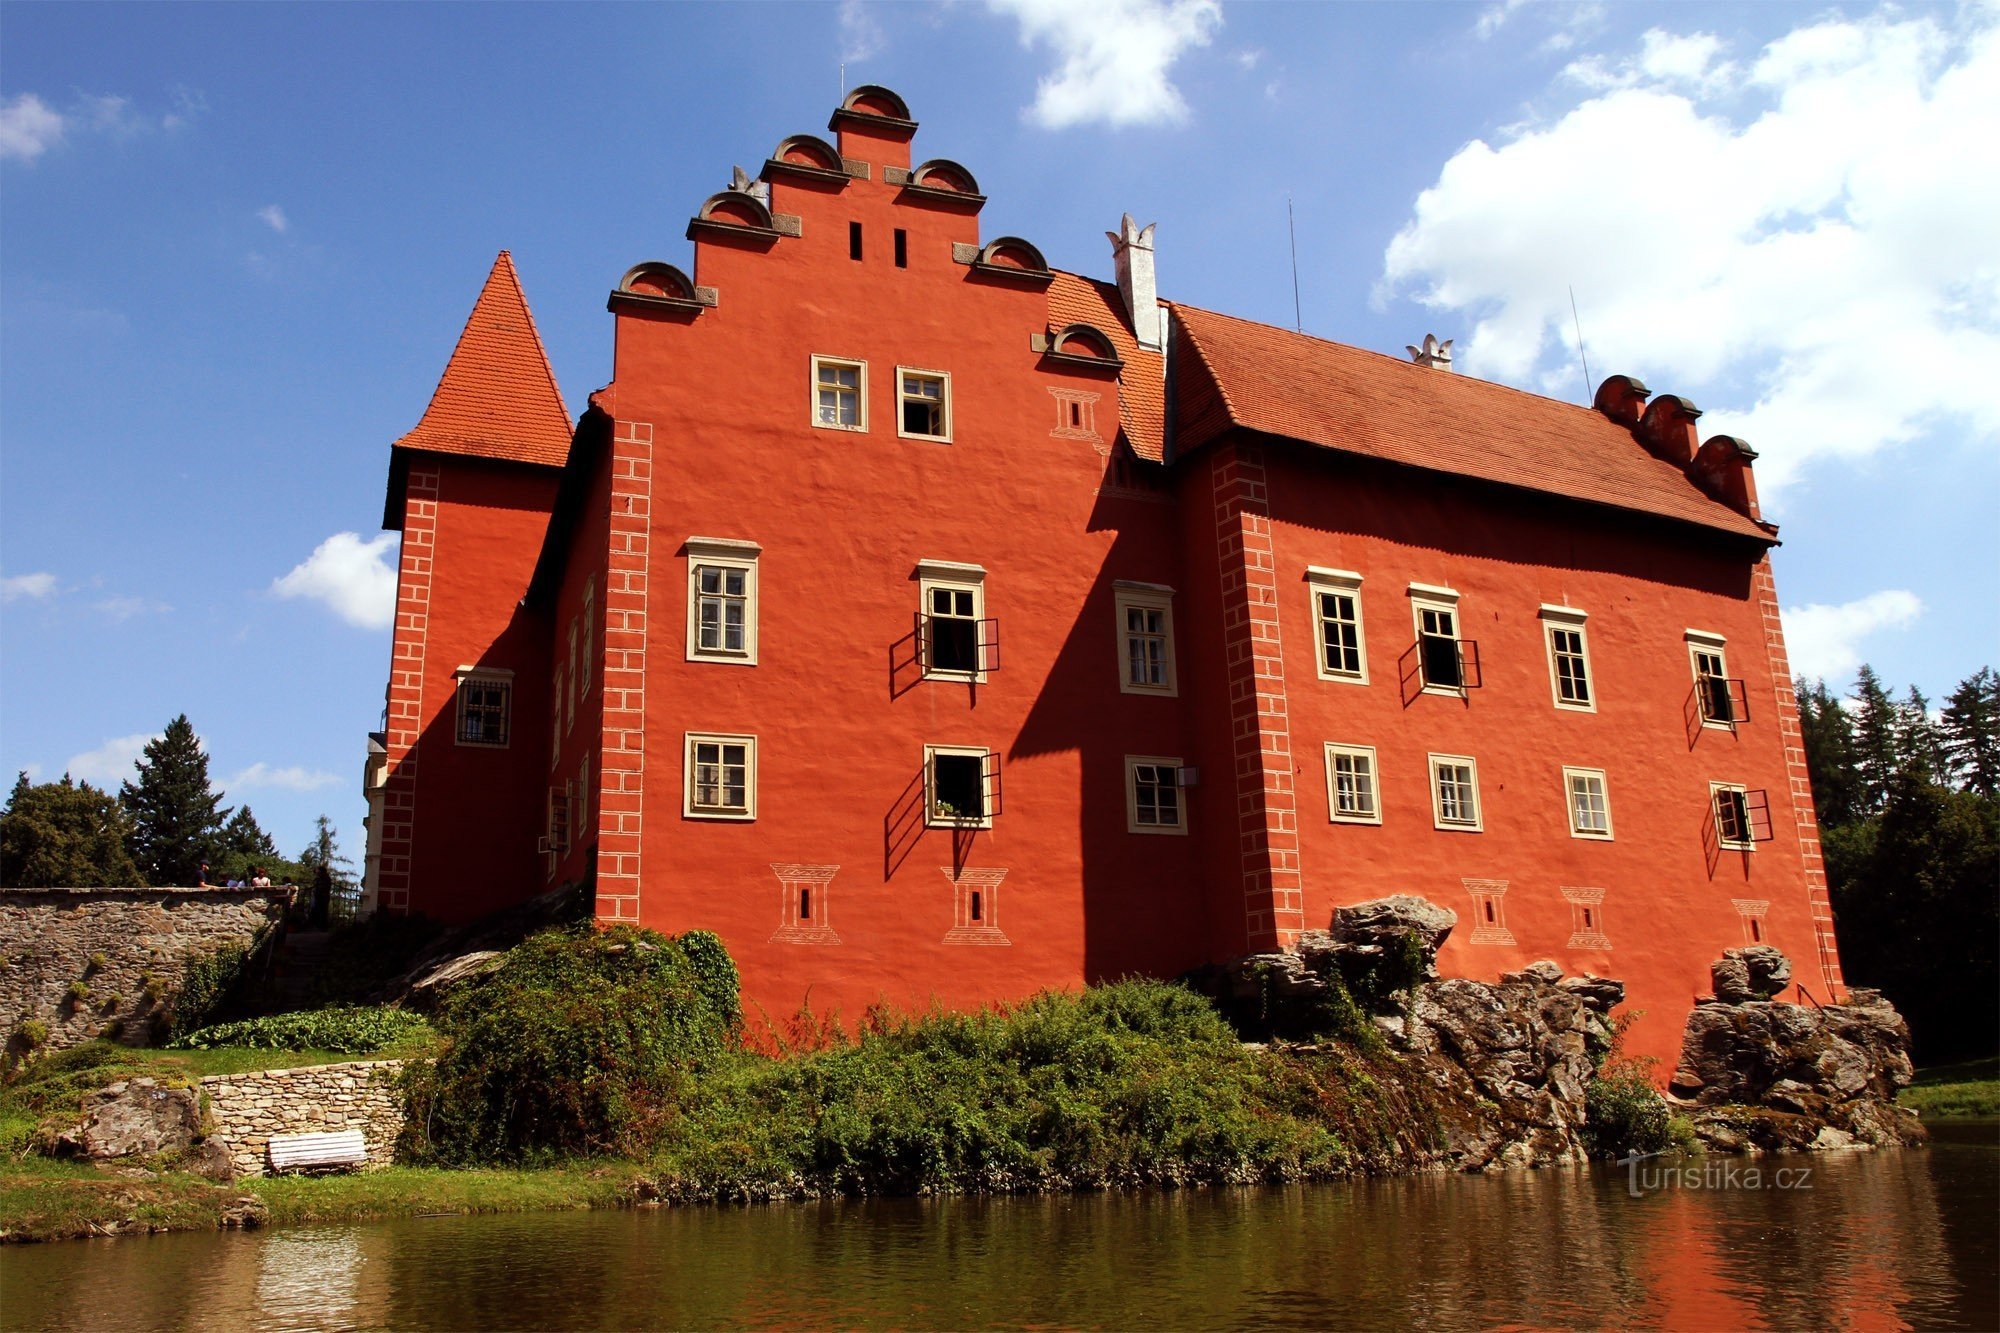 ČervenáLhota Castle